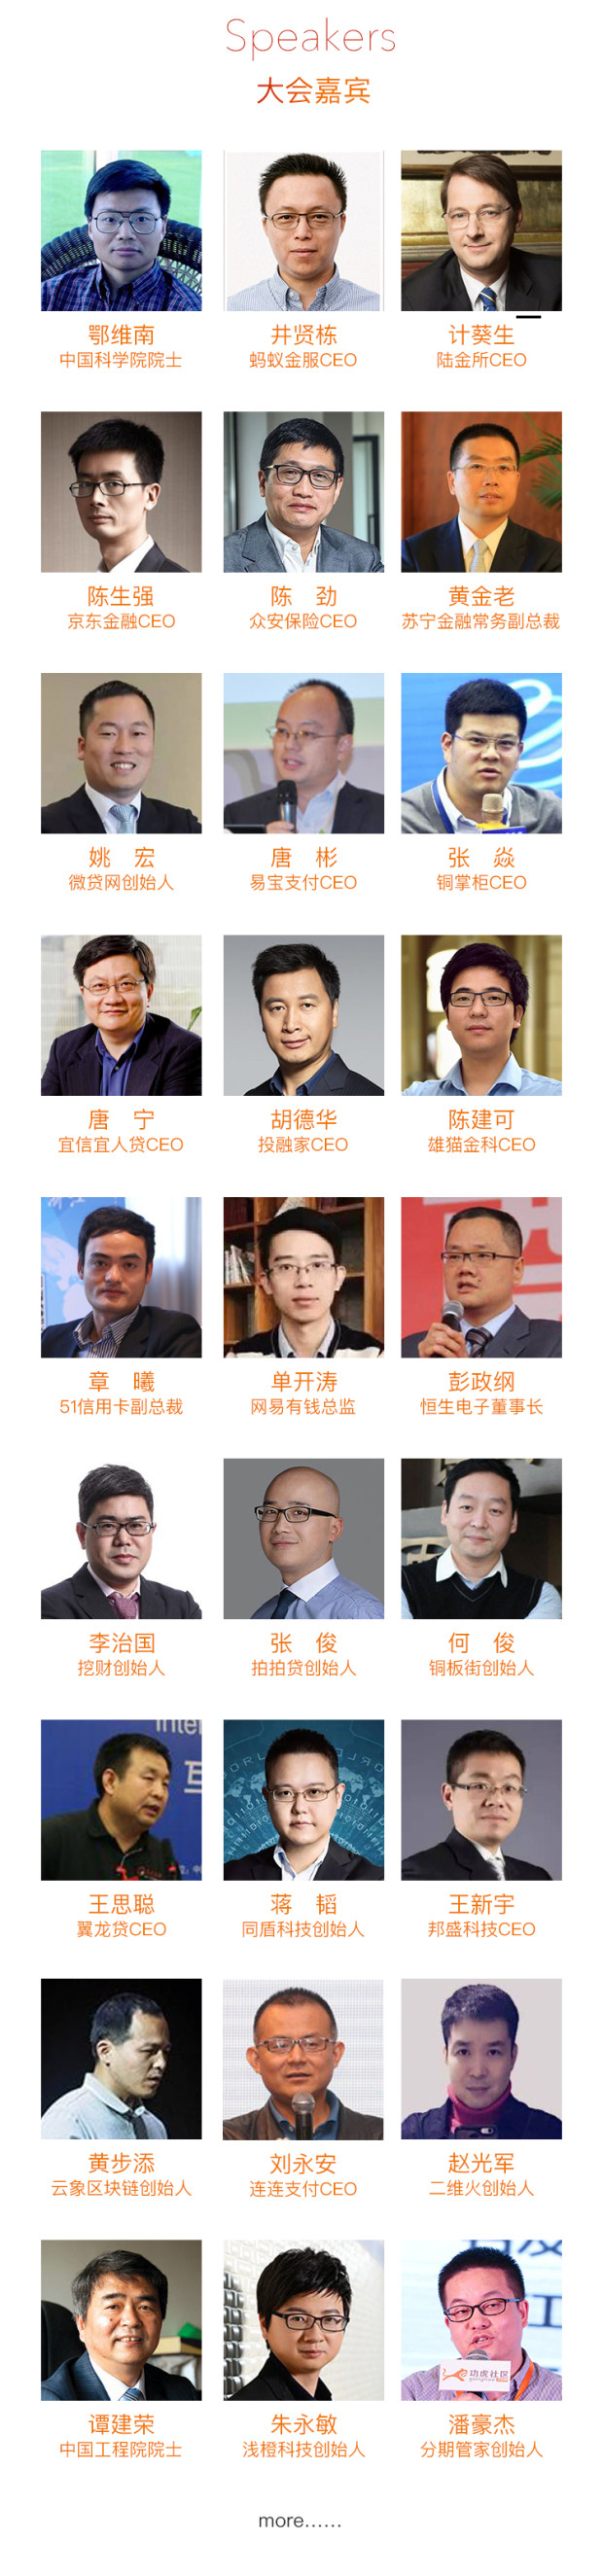 2017中国FinTech大会